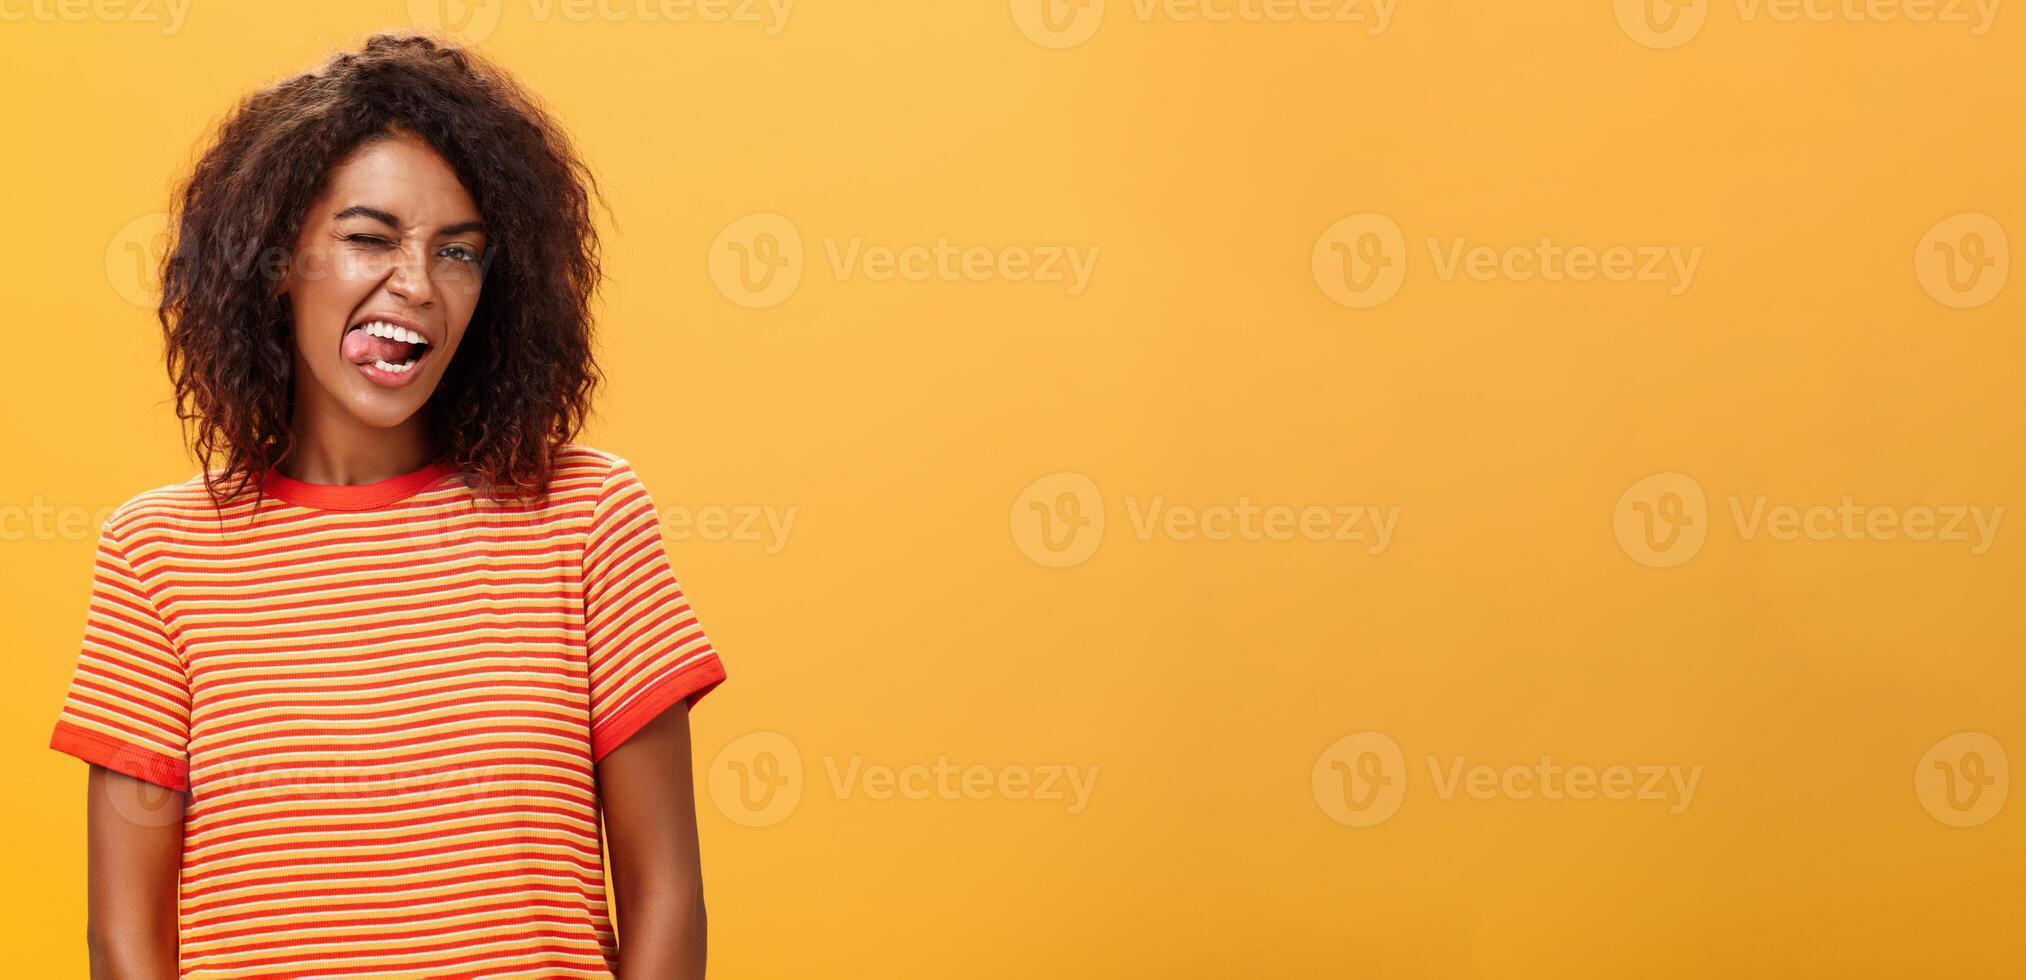 portret van gedurfd en emotioneel zelfverzekerd flirterig vrouw met afro kapsel knipogen blij tonen tong poseren zorgeloos en enthousiast tegen oranje achtergrond flirten met heet vent foto